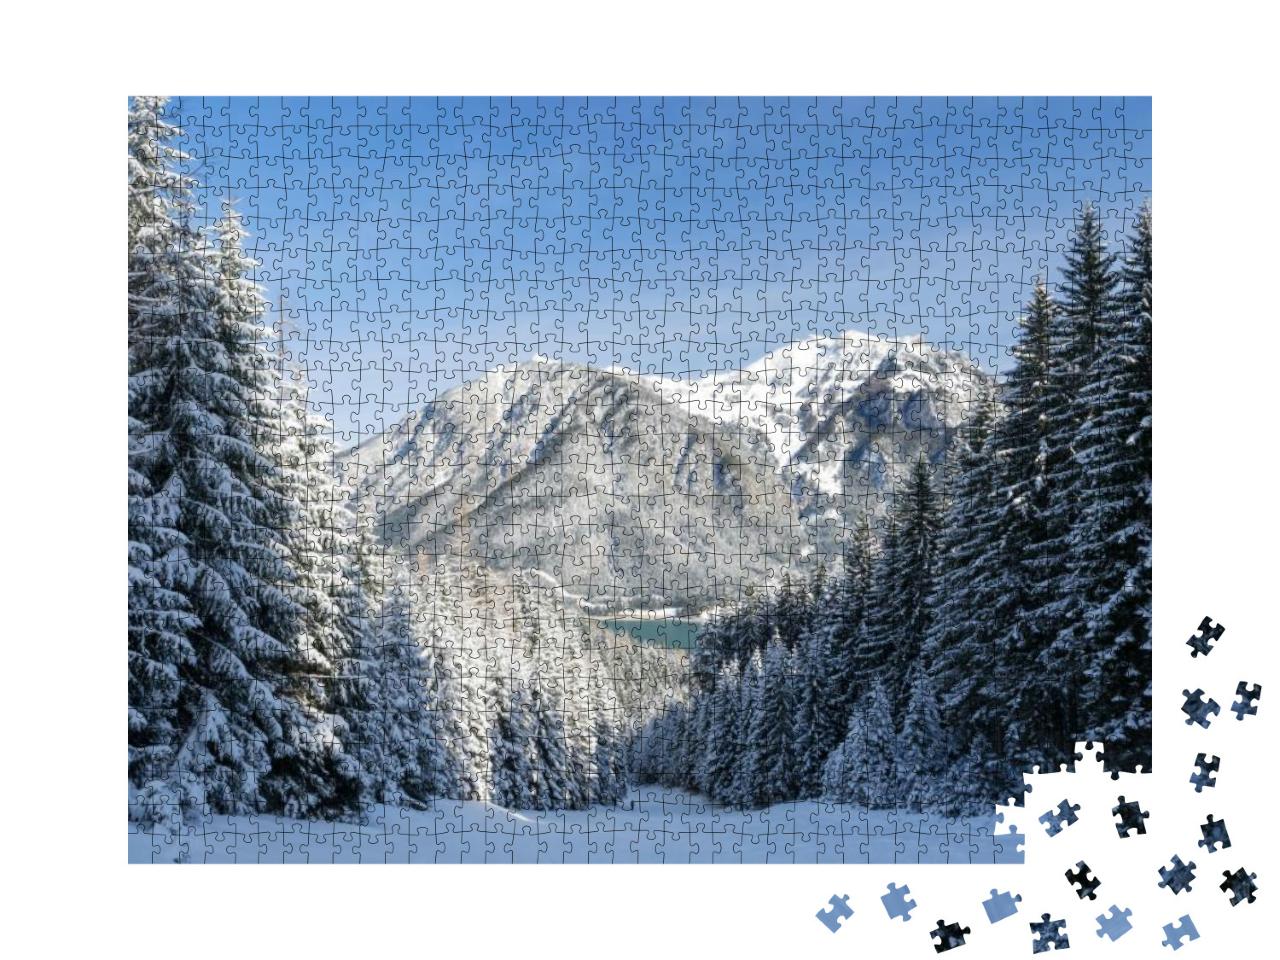 Puzzle 1000 Teile „Winterliche Landschaft am Achensee, Tirol, Österreich“